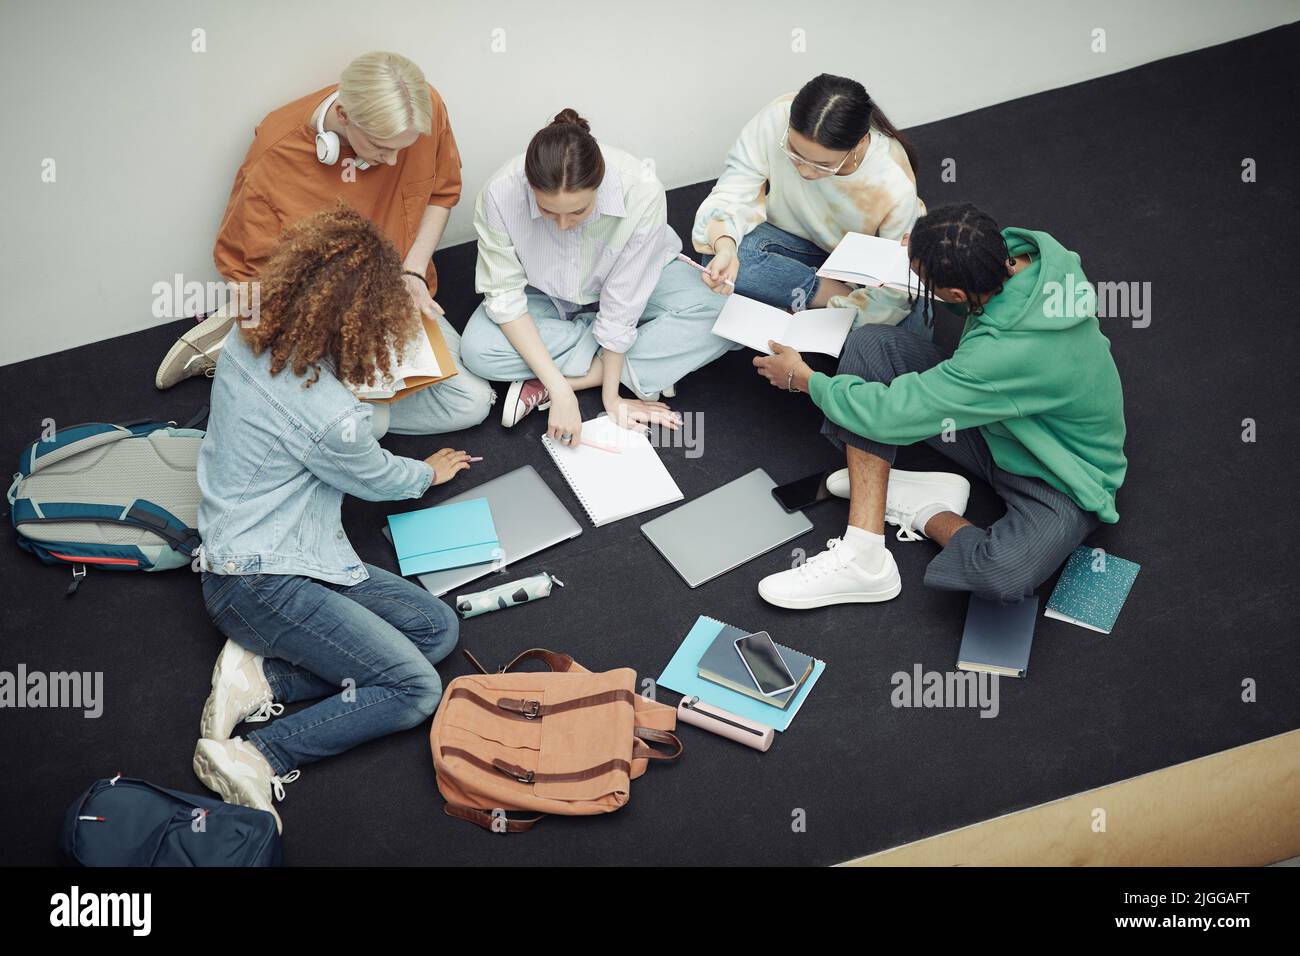 Über dem Winkel der Gruppe von multikulturellen Jugendlichen in der Freizeitkleidung diskutieren Vorlesungsnotizen nach dem Unterricht, während sie ihre Copybooks betrachten Stockfoto